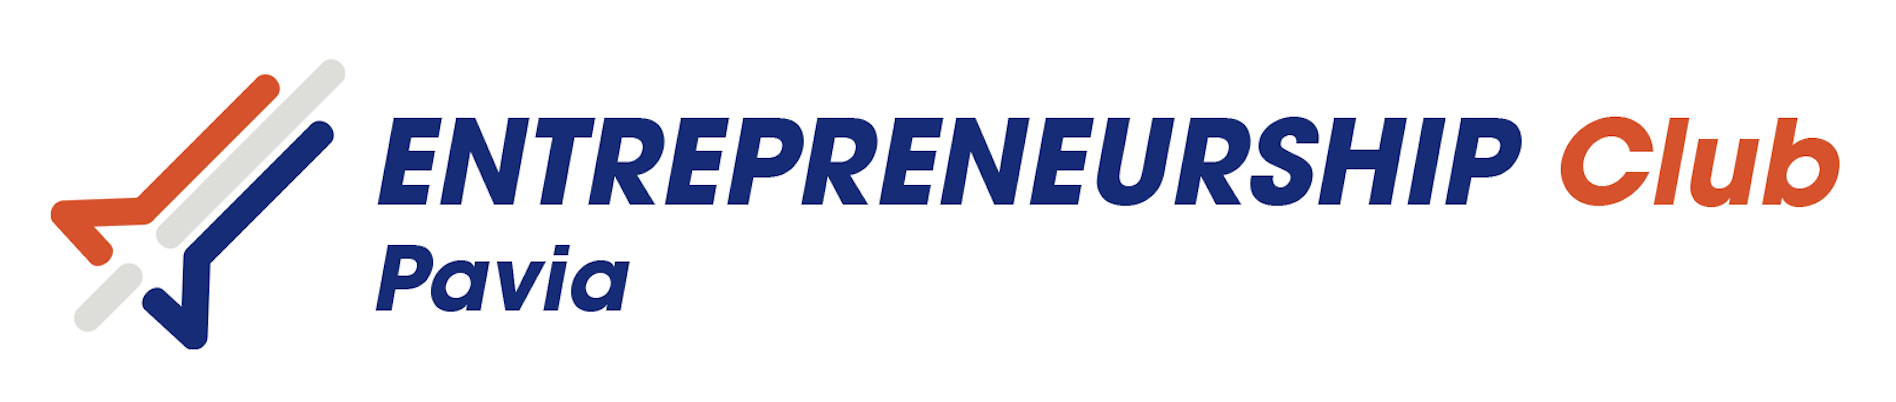 Entrepreneurship Club Pavia Eclub